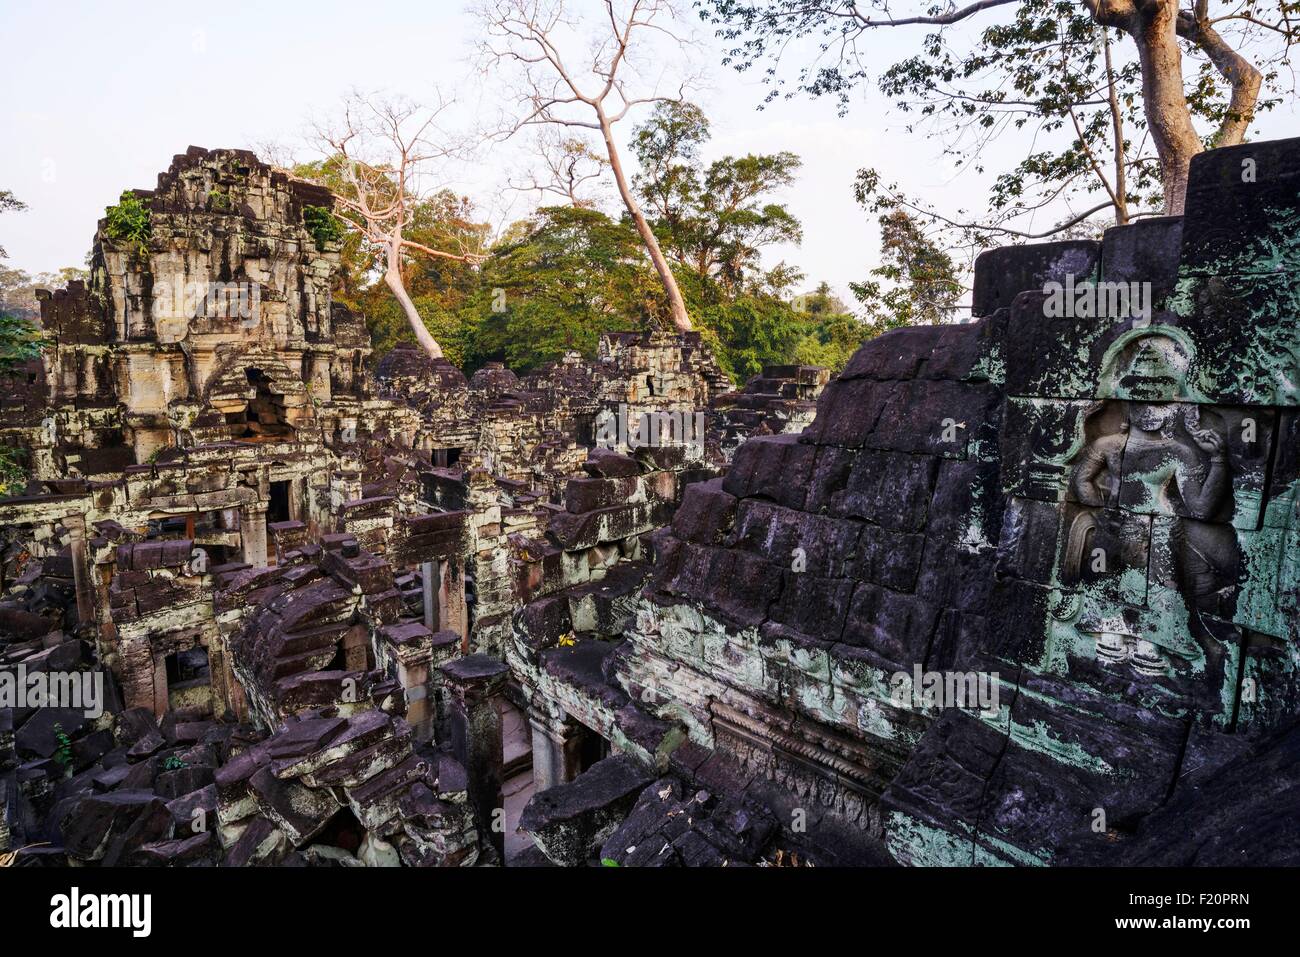 Kambodscha, Angkor als Weltkulturerbe der UNESCO, Preah Khan von Angkor, im Jahre 1191 von König Jayavarman VII gebaut aufgeführt Stockfoto